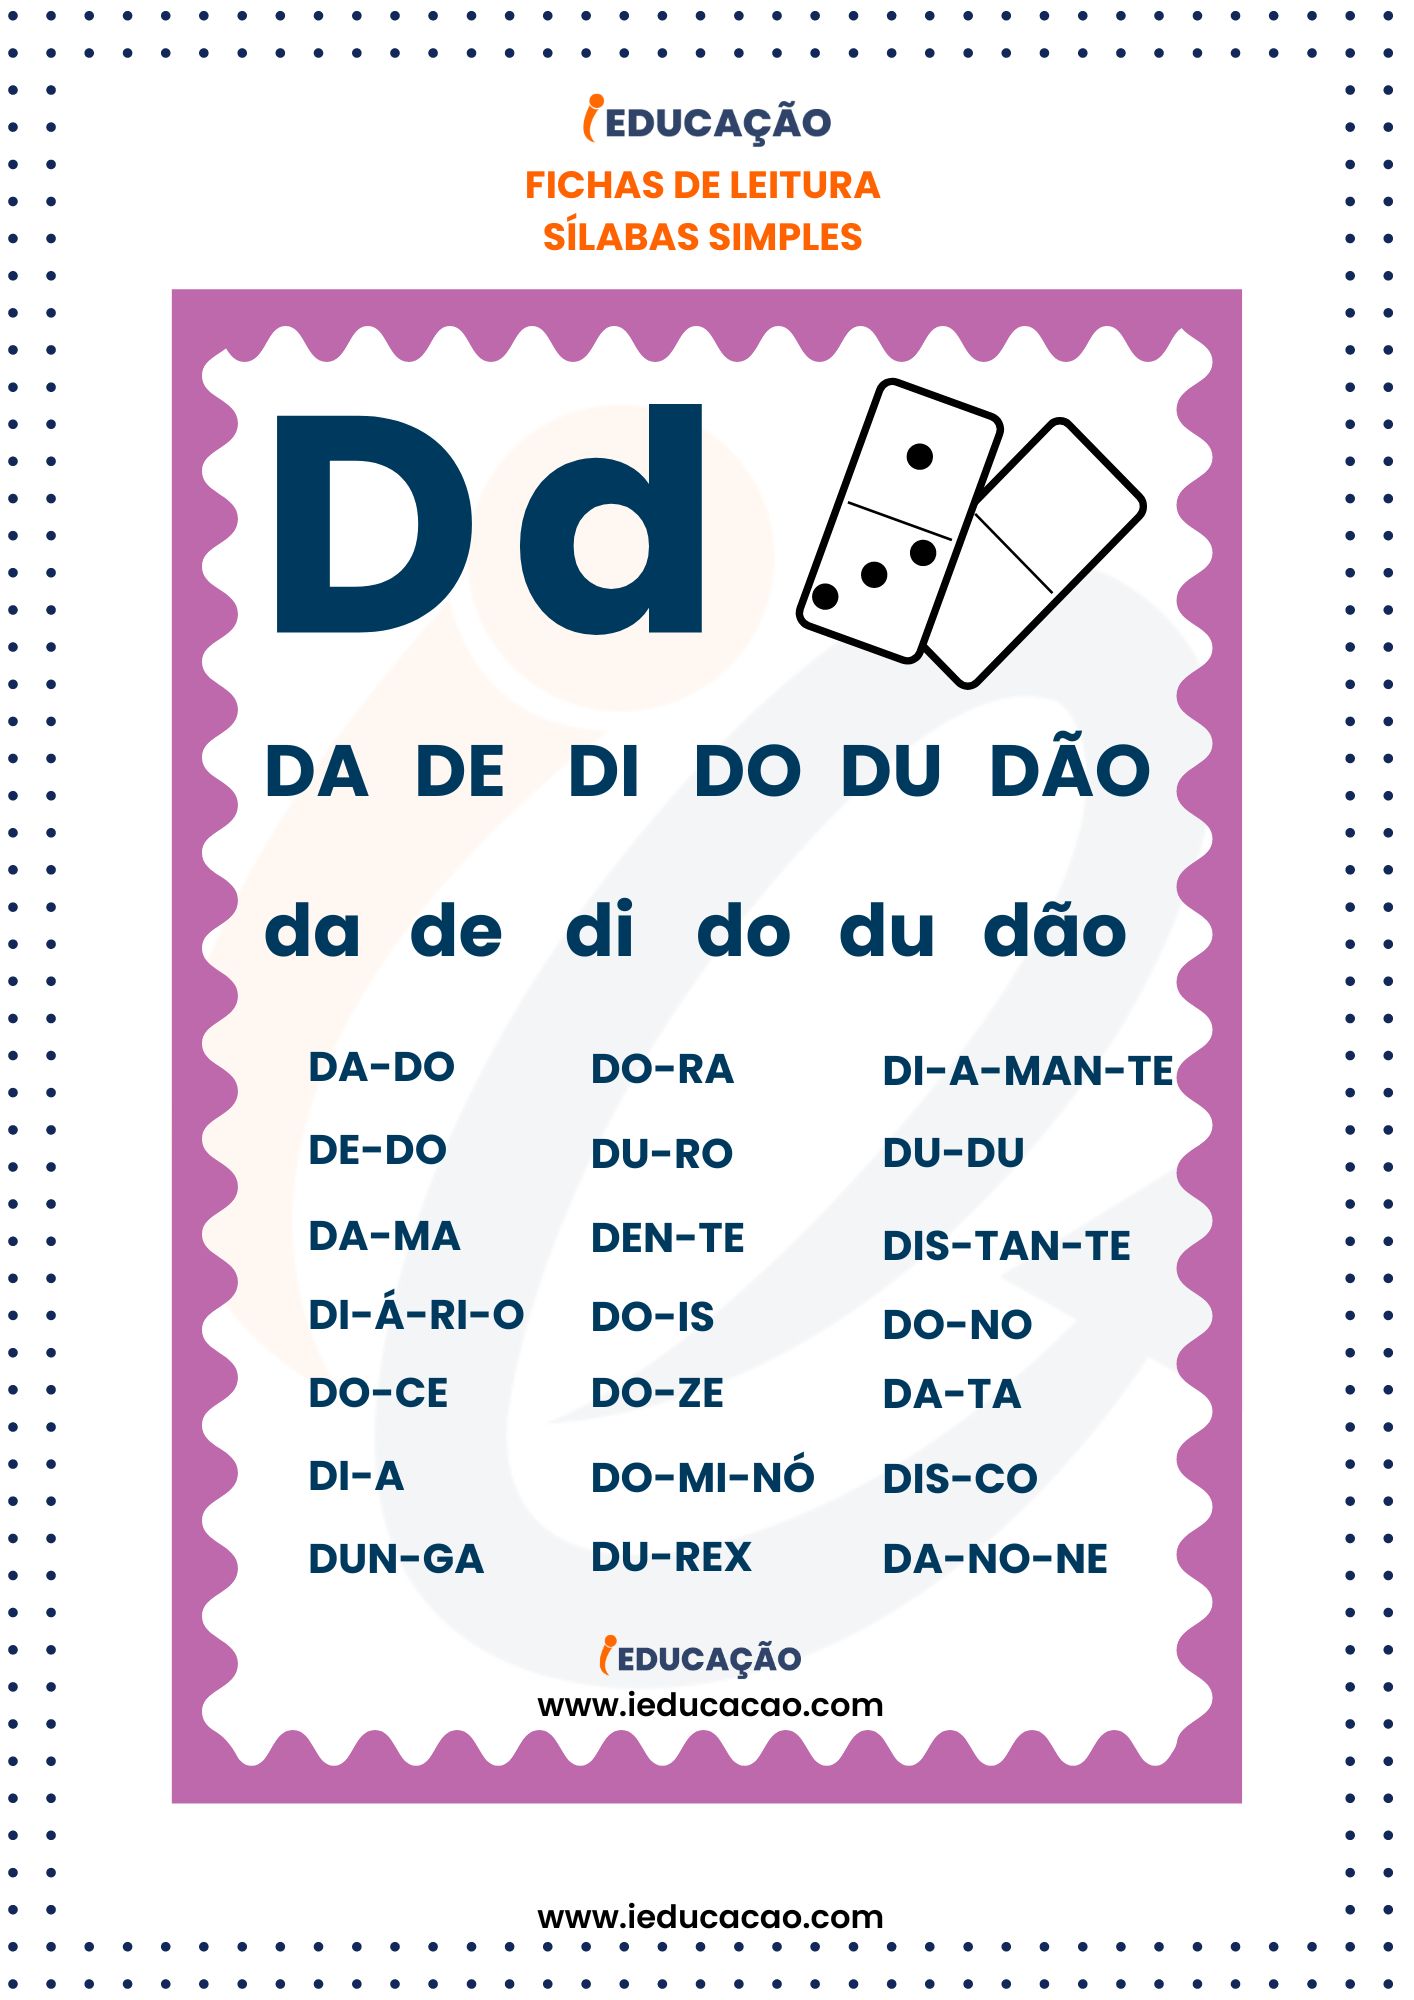 Fichas de Leitura Silabas Simples- silabas da de di do du